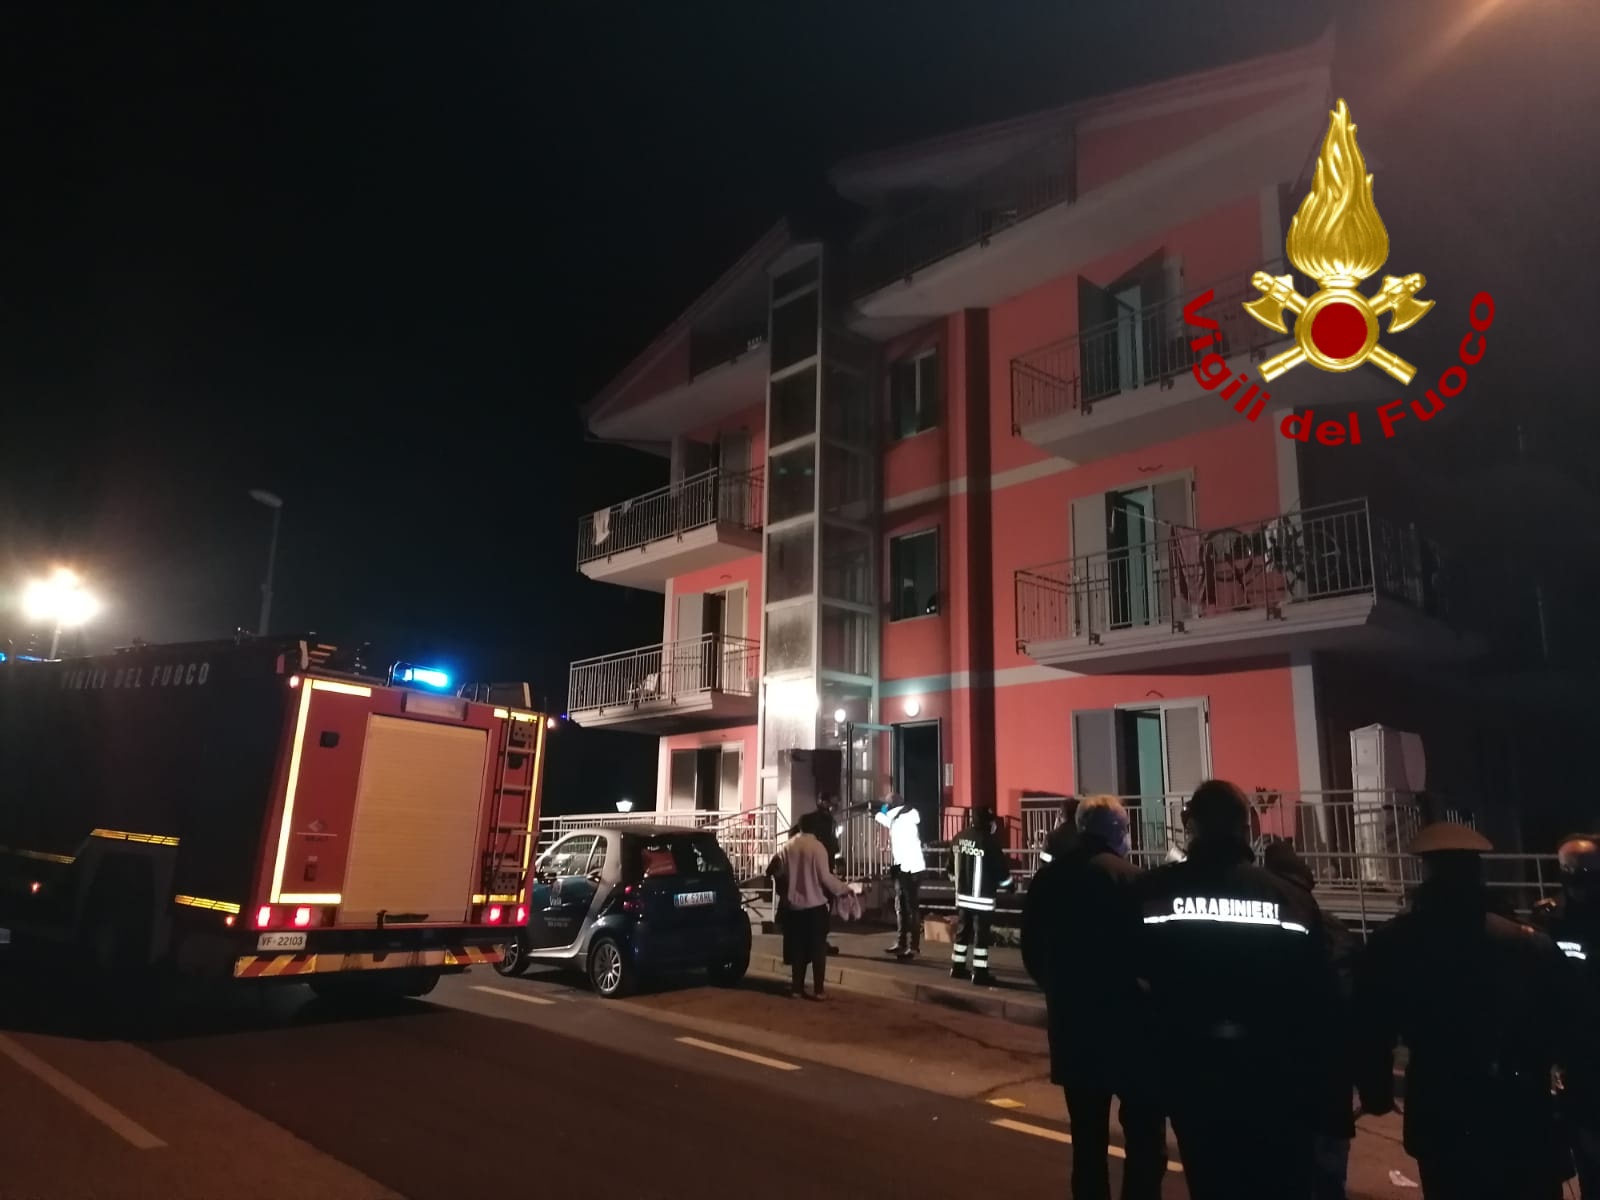 Prata P.U.| Incendio in una residenza per extracomunitari, 2 feriti al Moscati